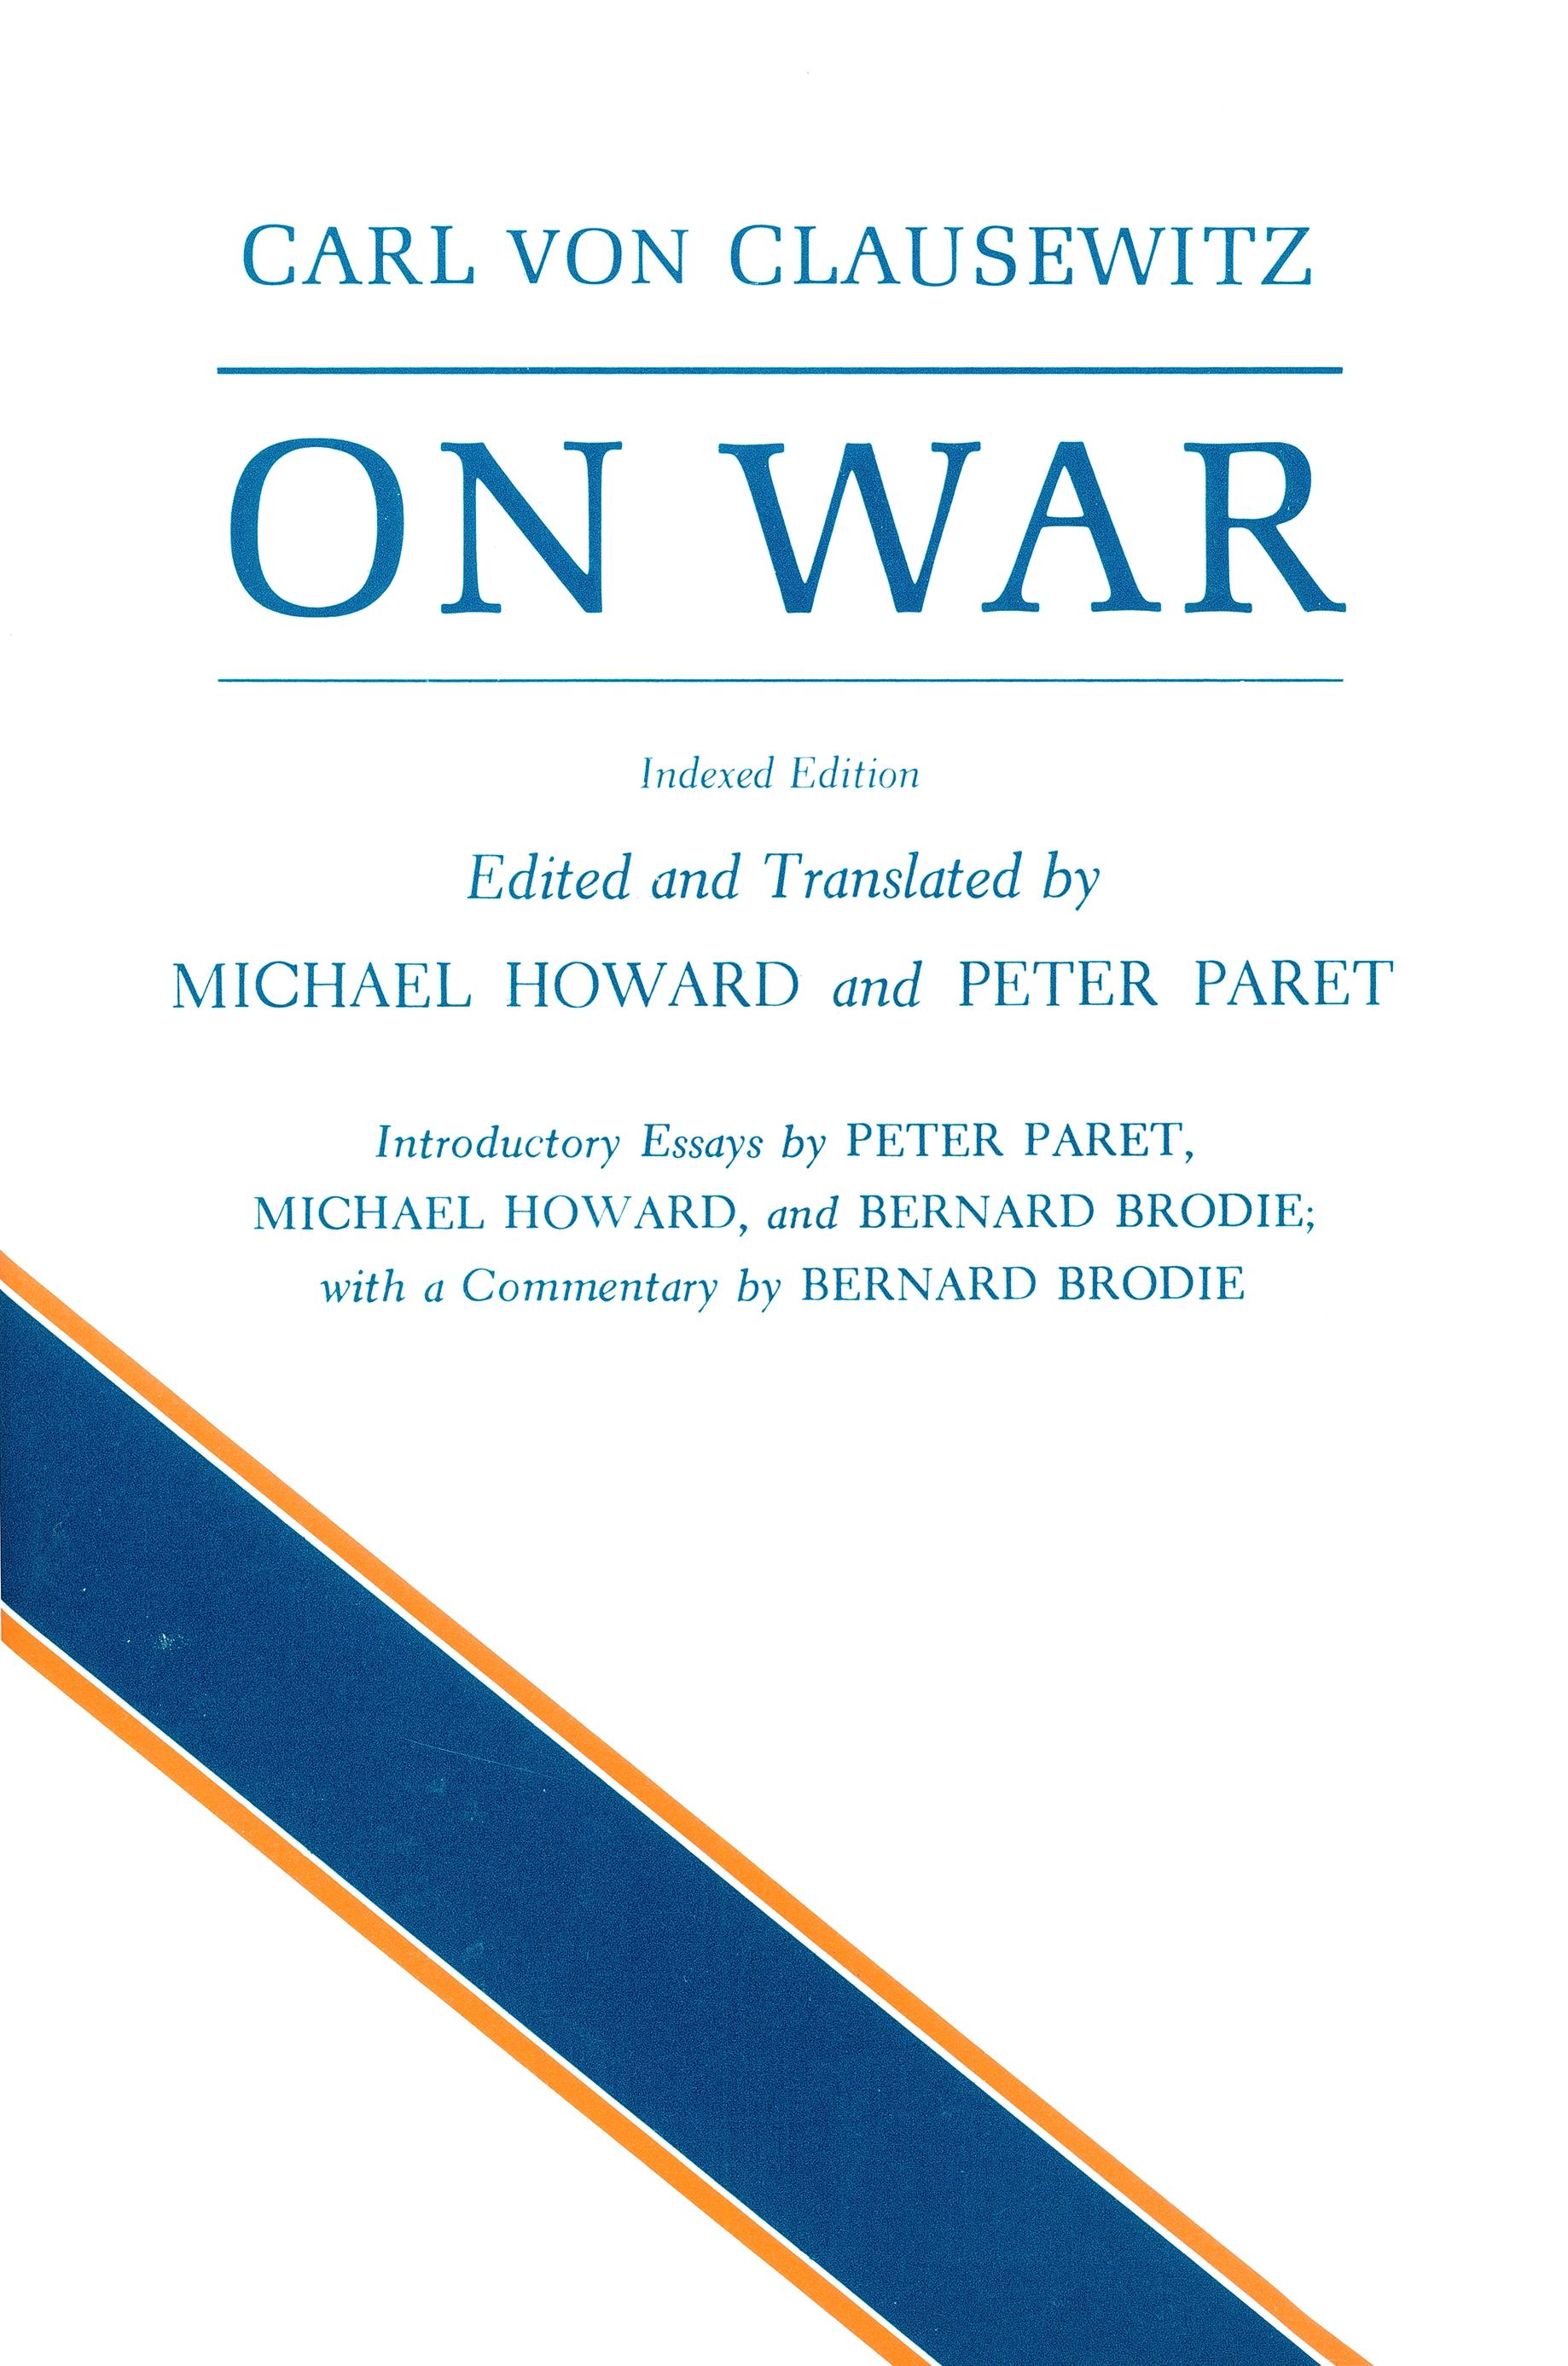 On War / Carl Von Clausewitz / Taschenbuch / Kartoniert / Broschiert / Englisch / 1989 / Princeton University Press / EAN 9780691018546 - Clausewitz, Carl Von